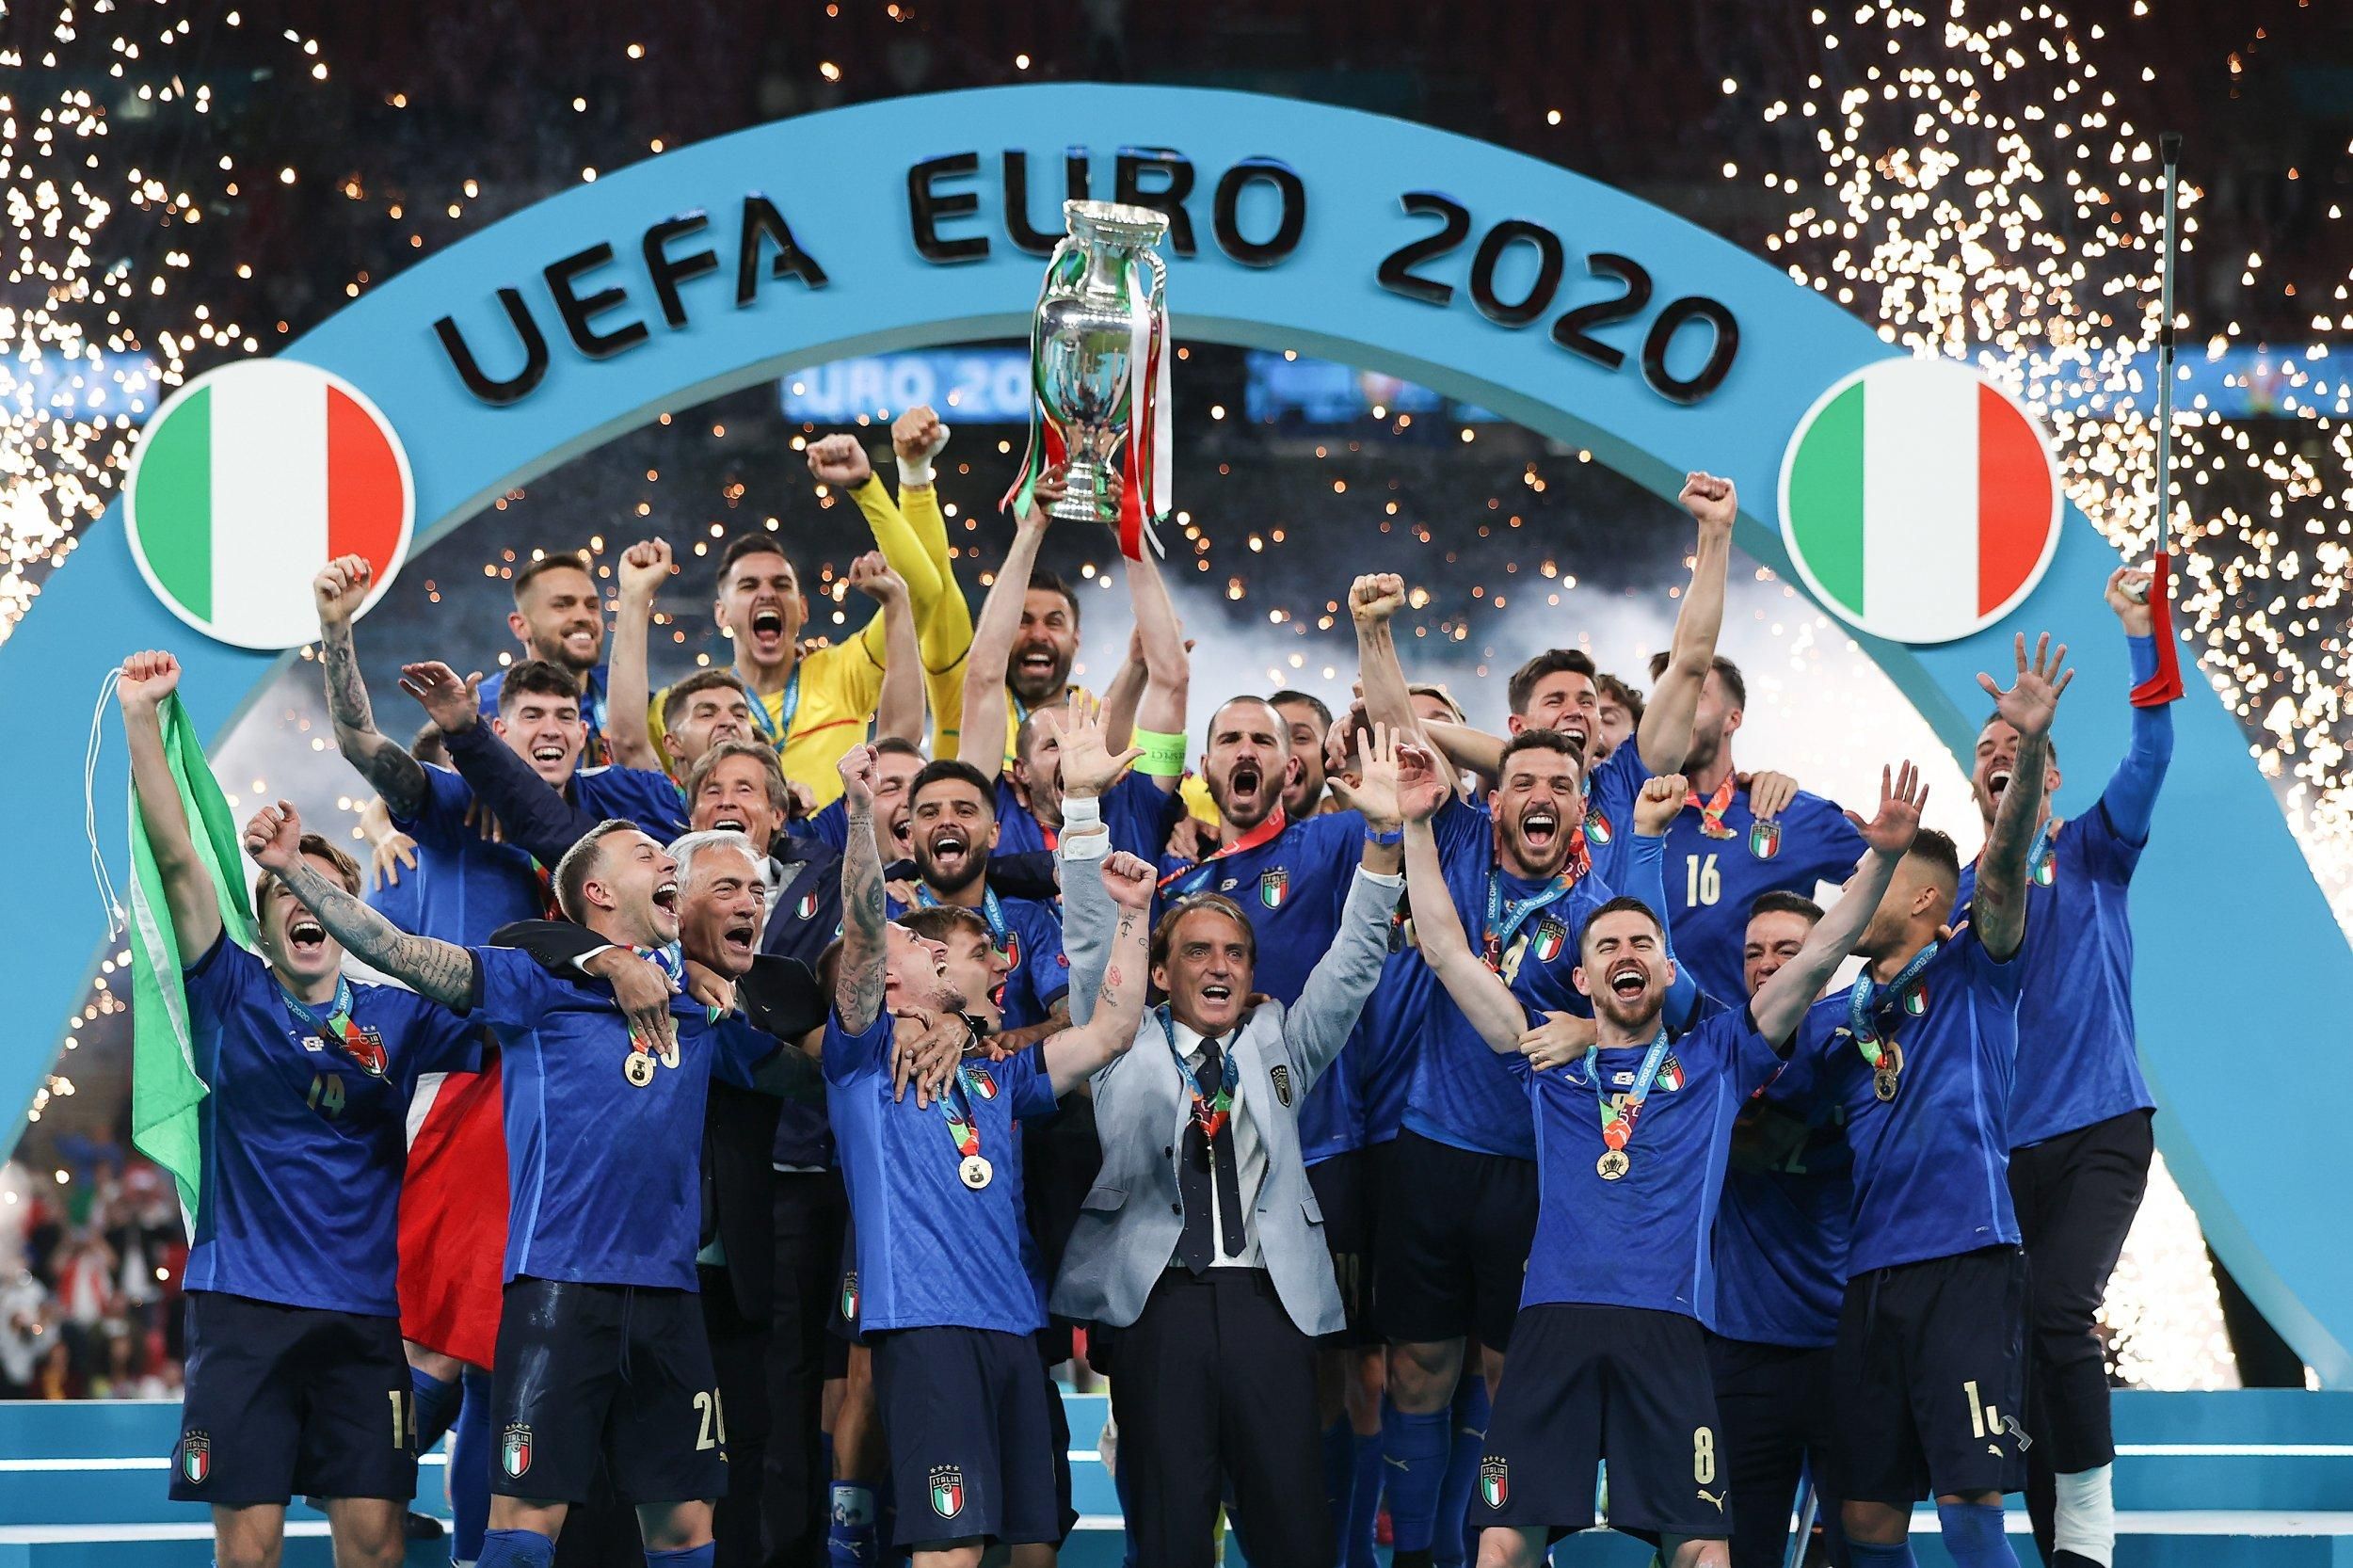 УЕФА предлагают провести матч Италия - Аргентина